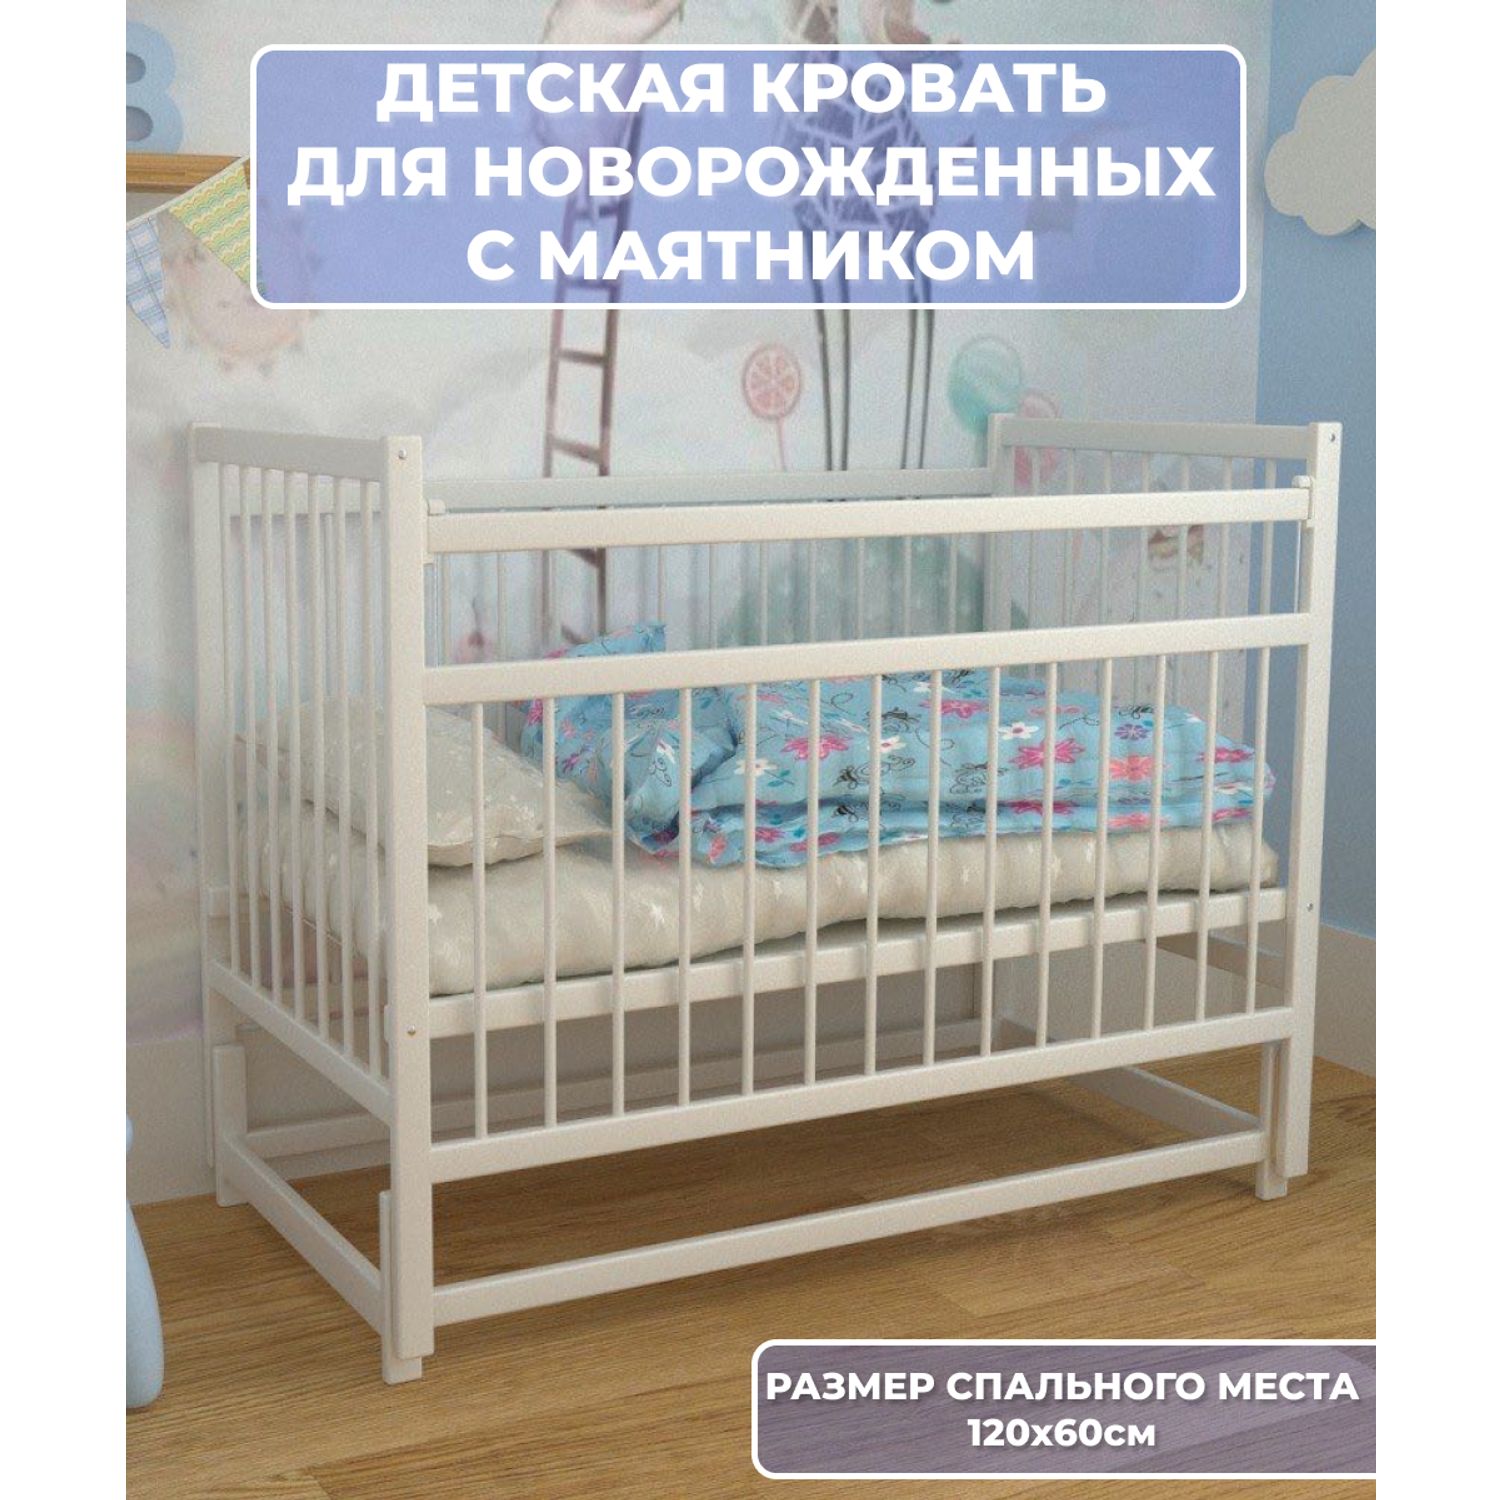 Детская кроватка Moms charm NovBelsmayatnikom, продольный маятник (белый) - фото 2